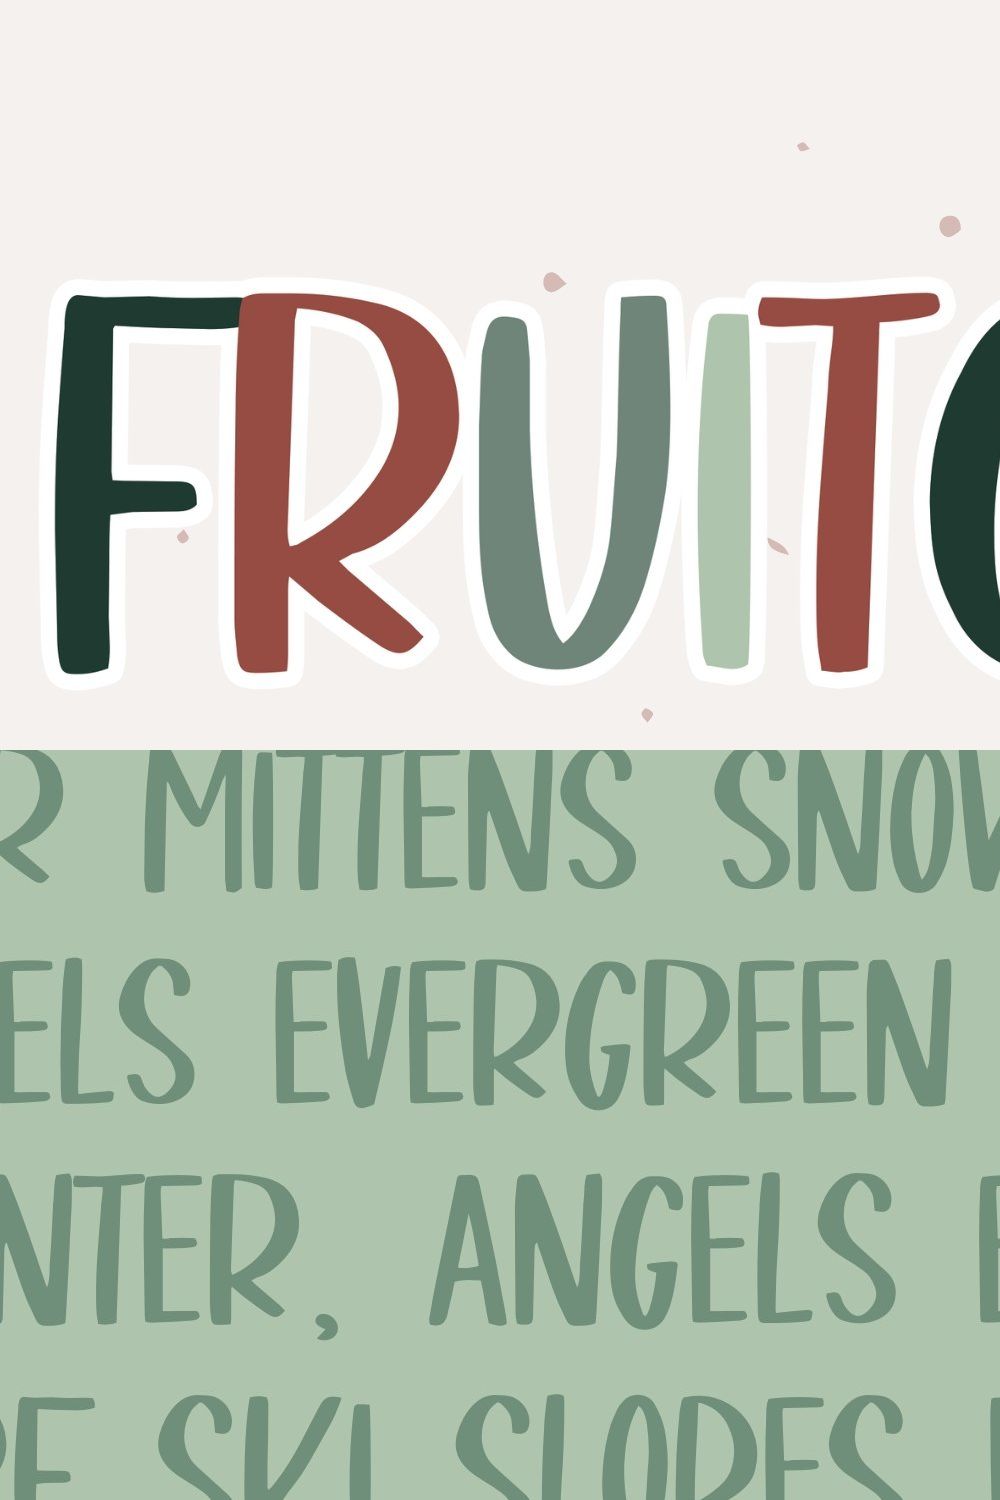 Fruitcake - A fun handwritten font pinterest preview image.